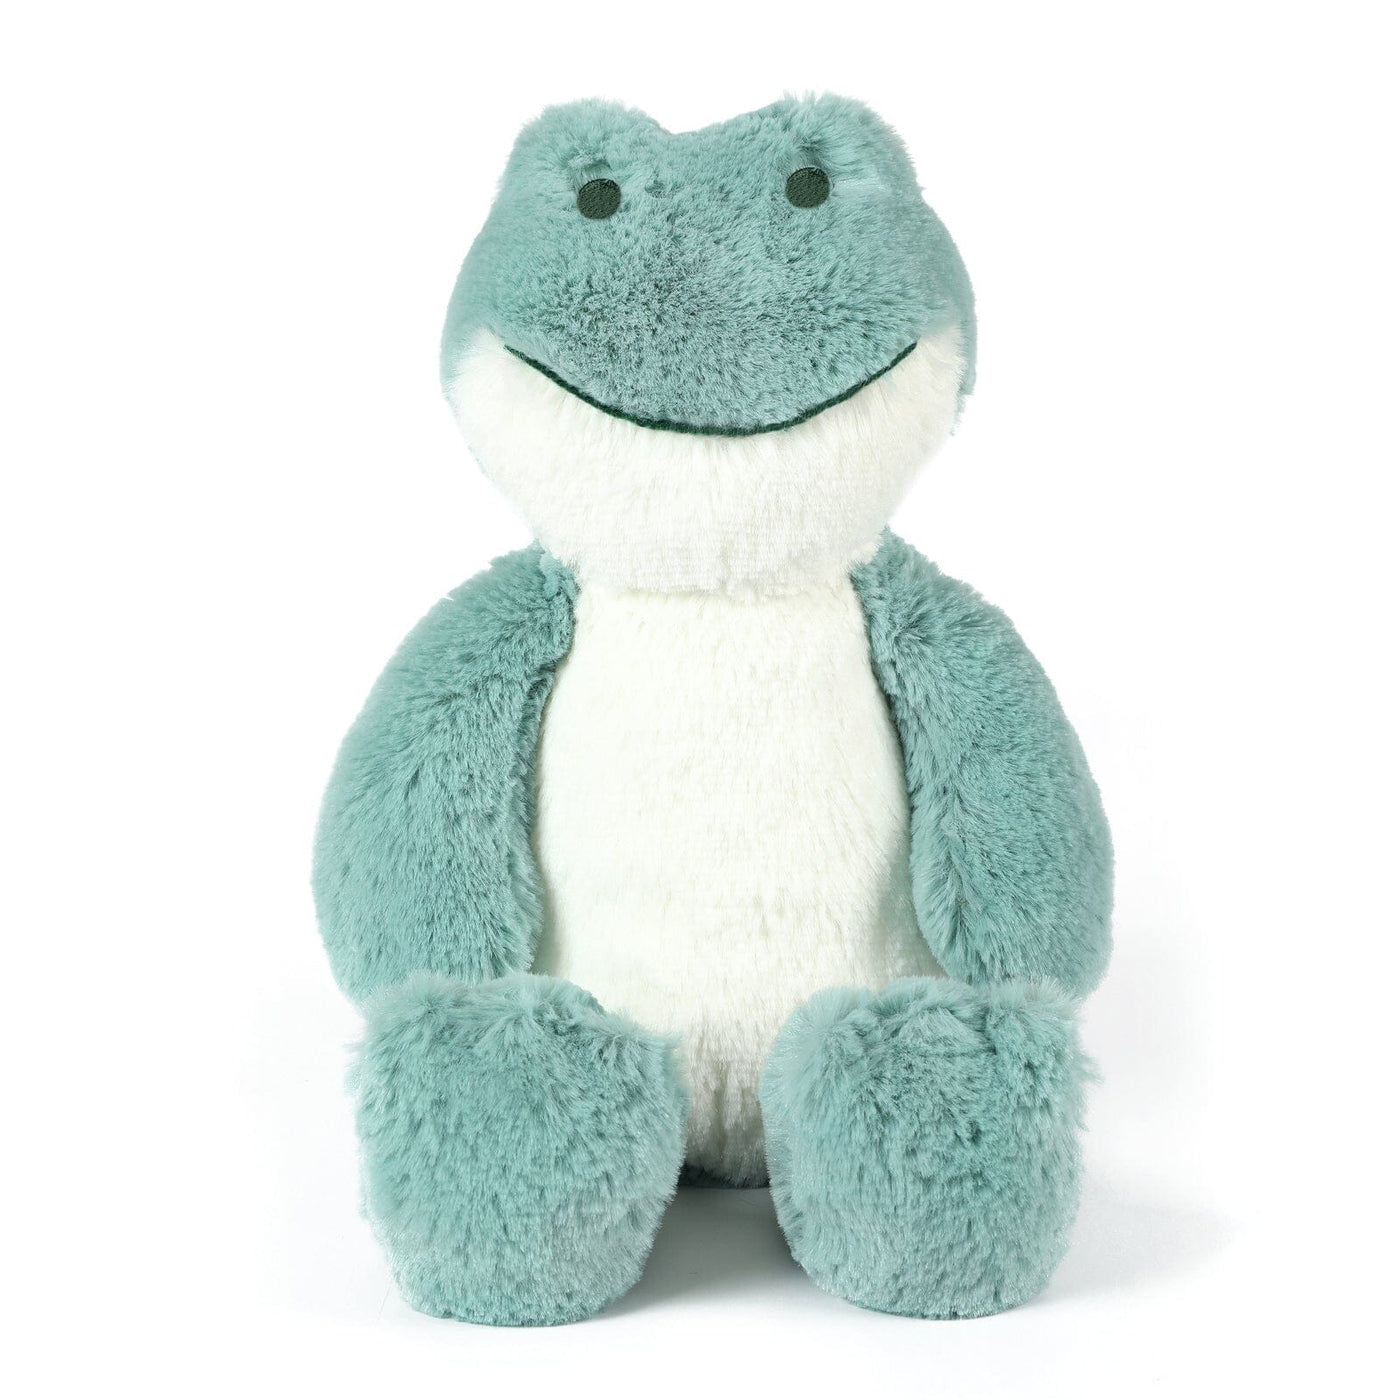 OB Designs-Freddy Frog Soft Toy